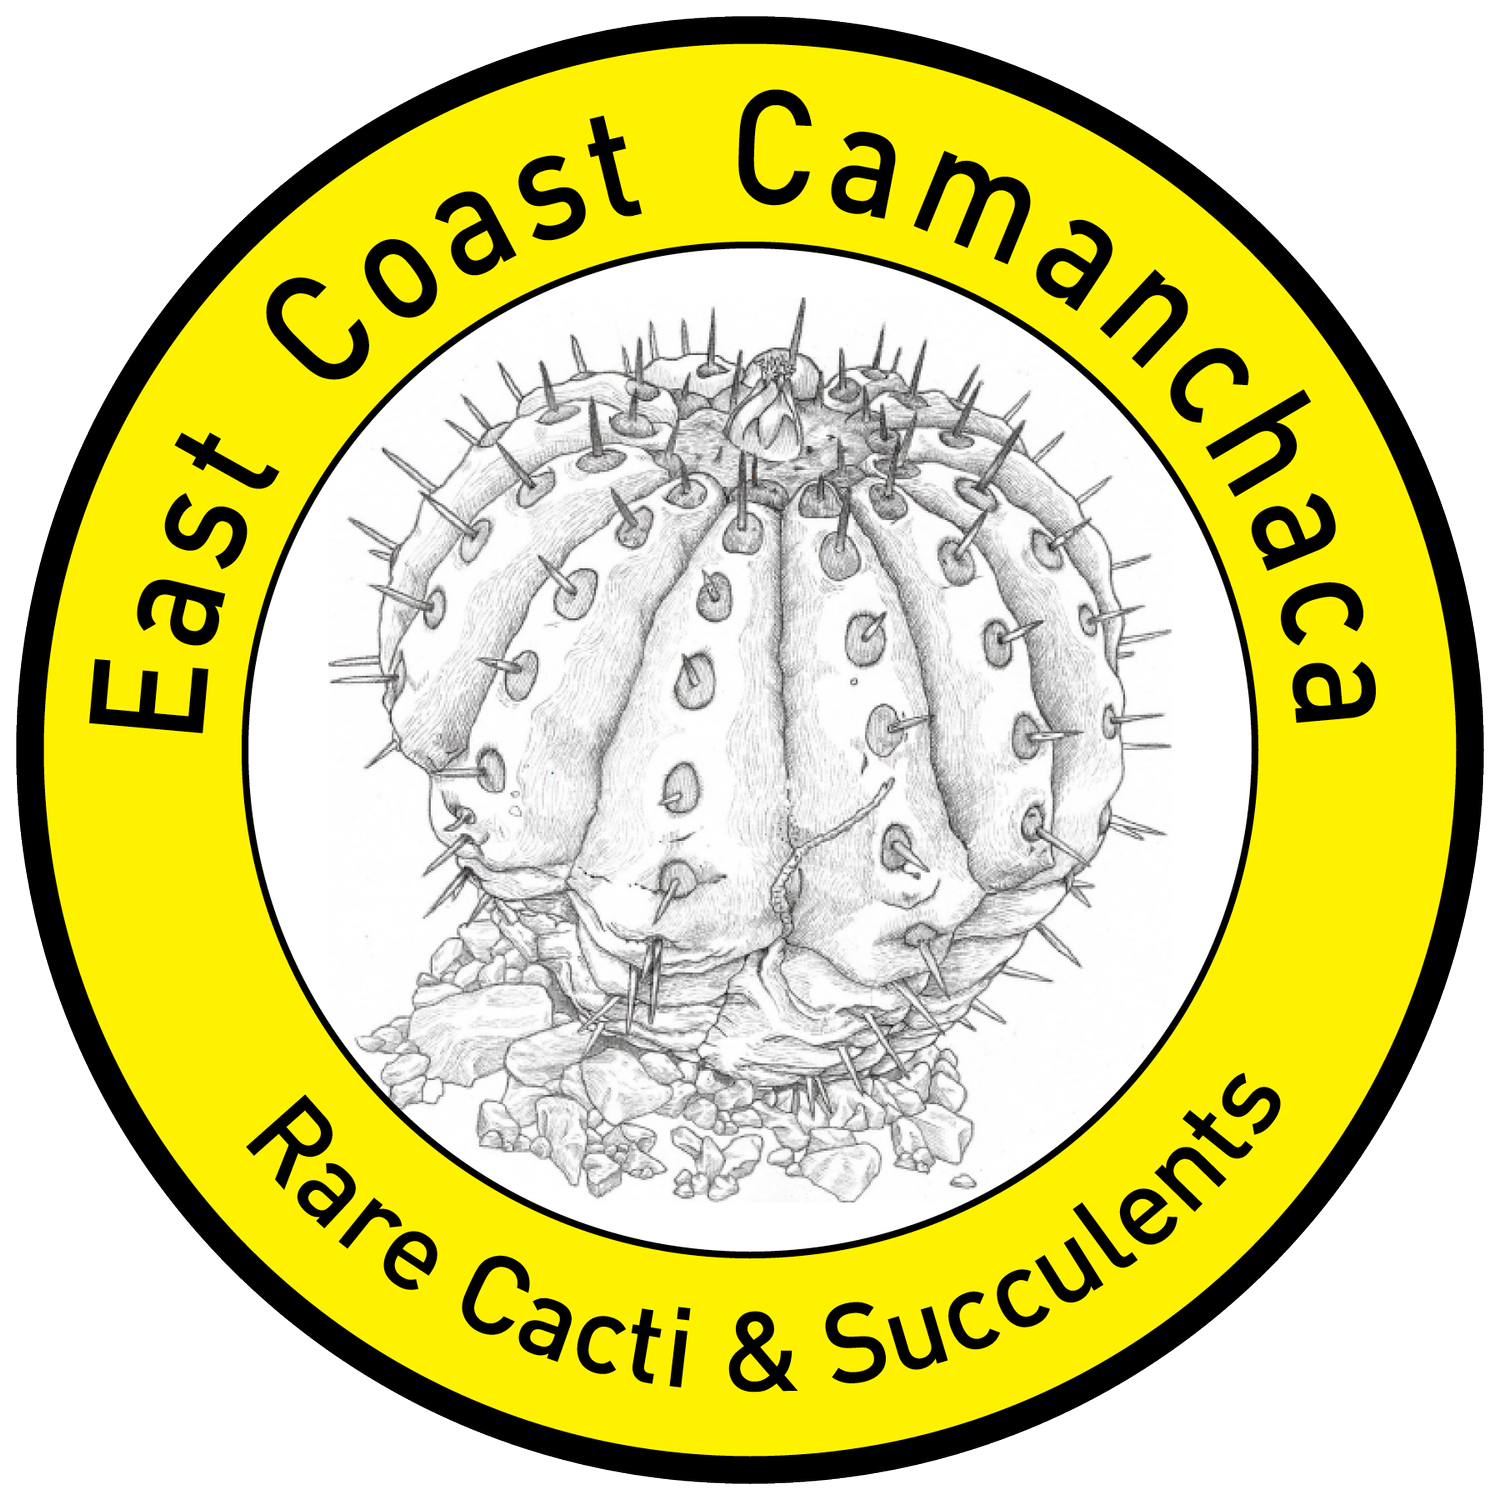 East Coast Camanchaca